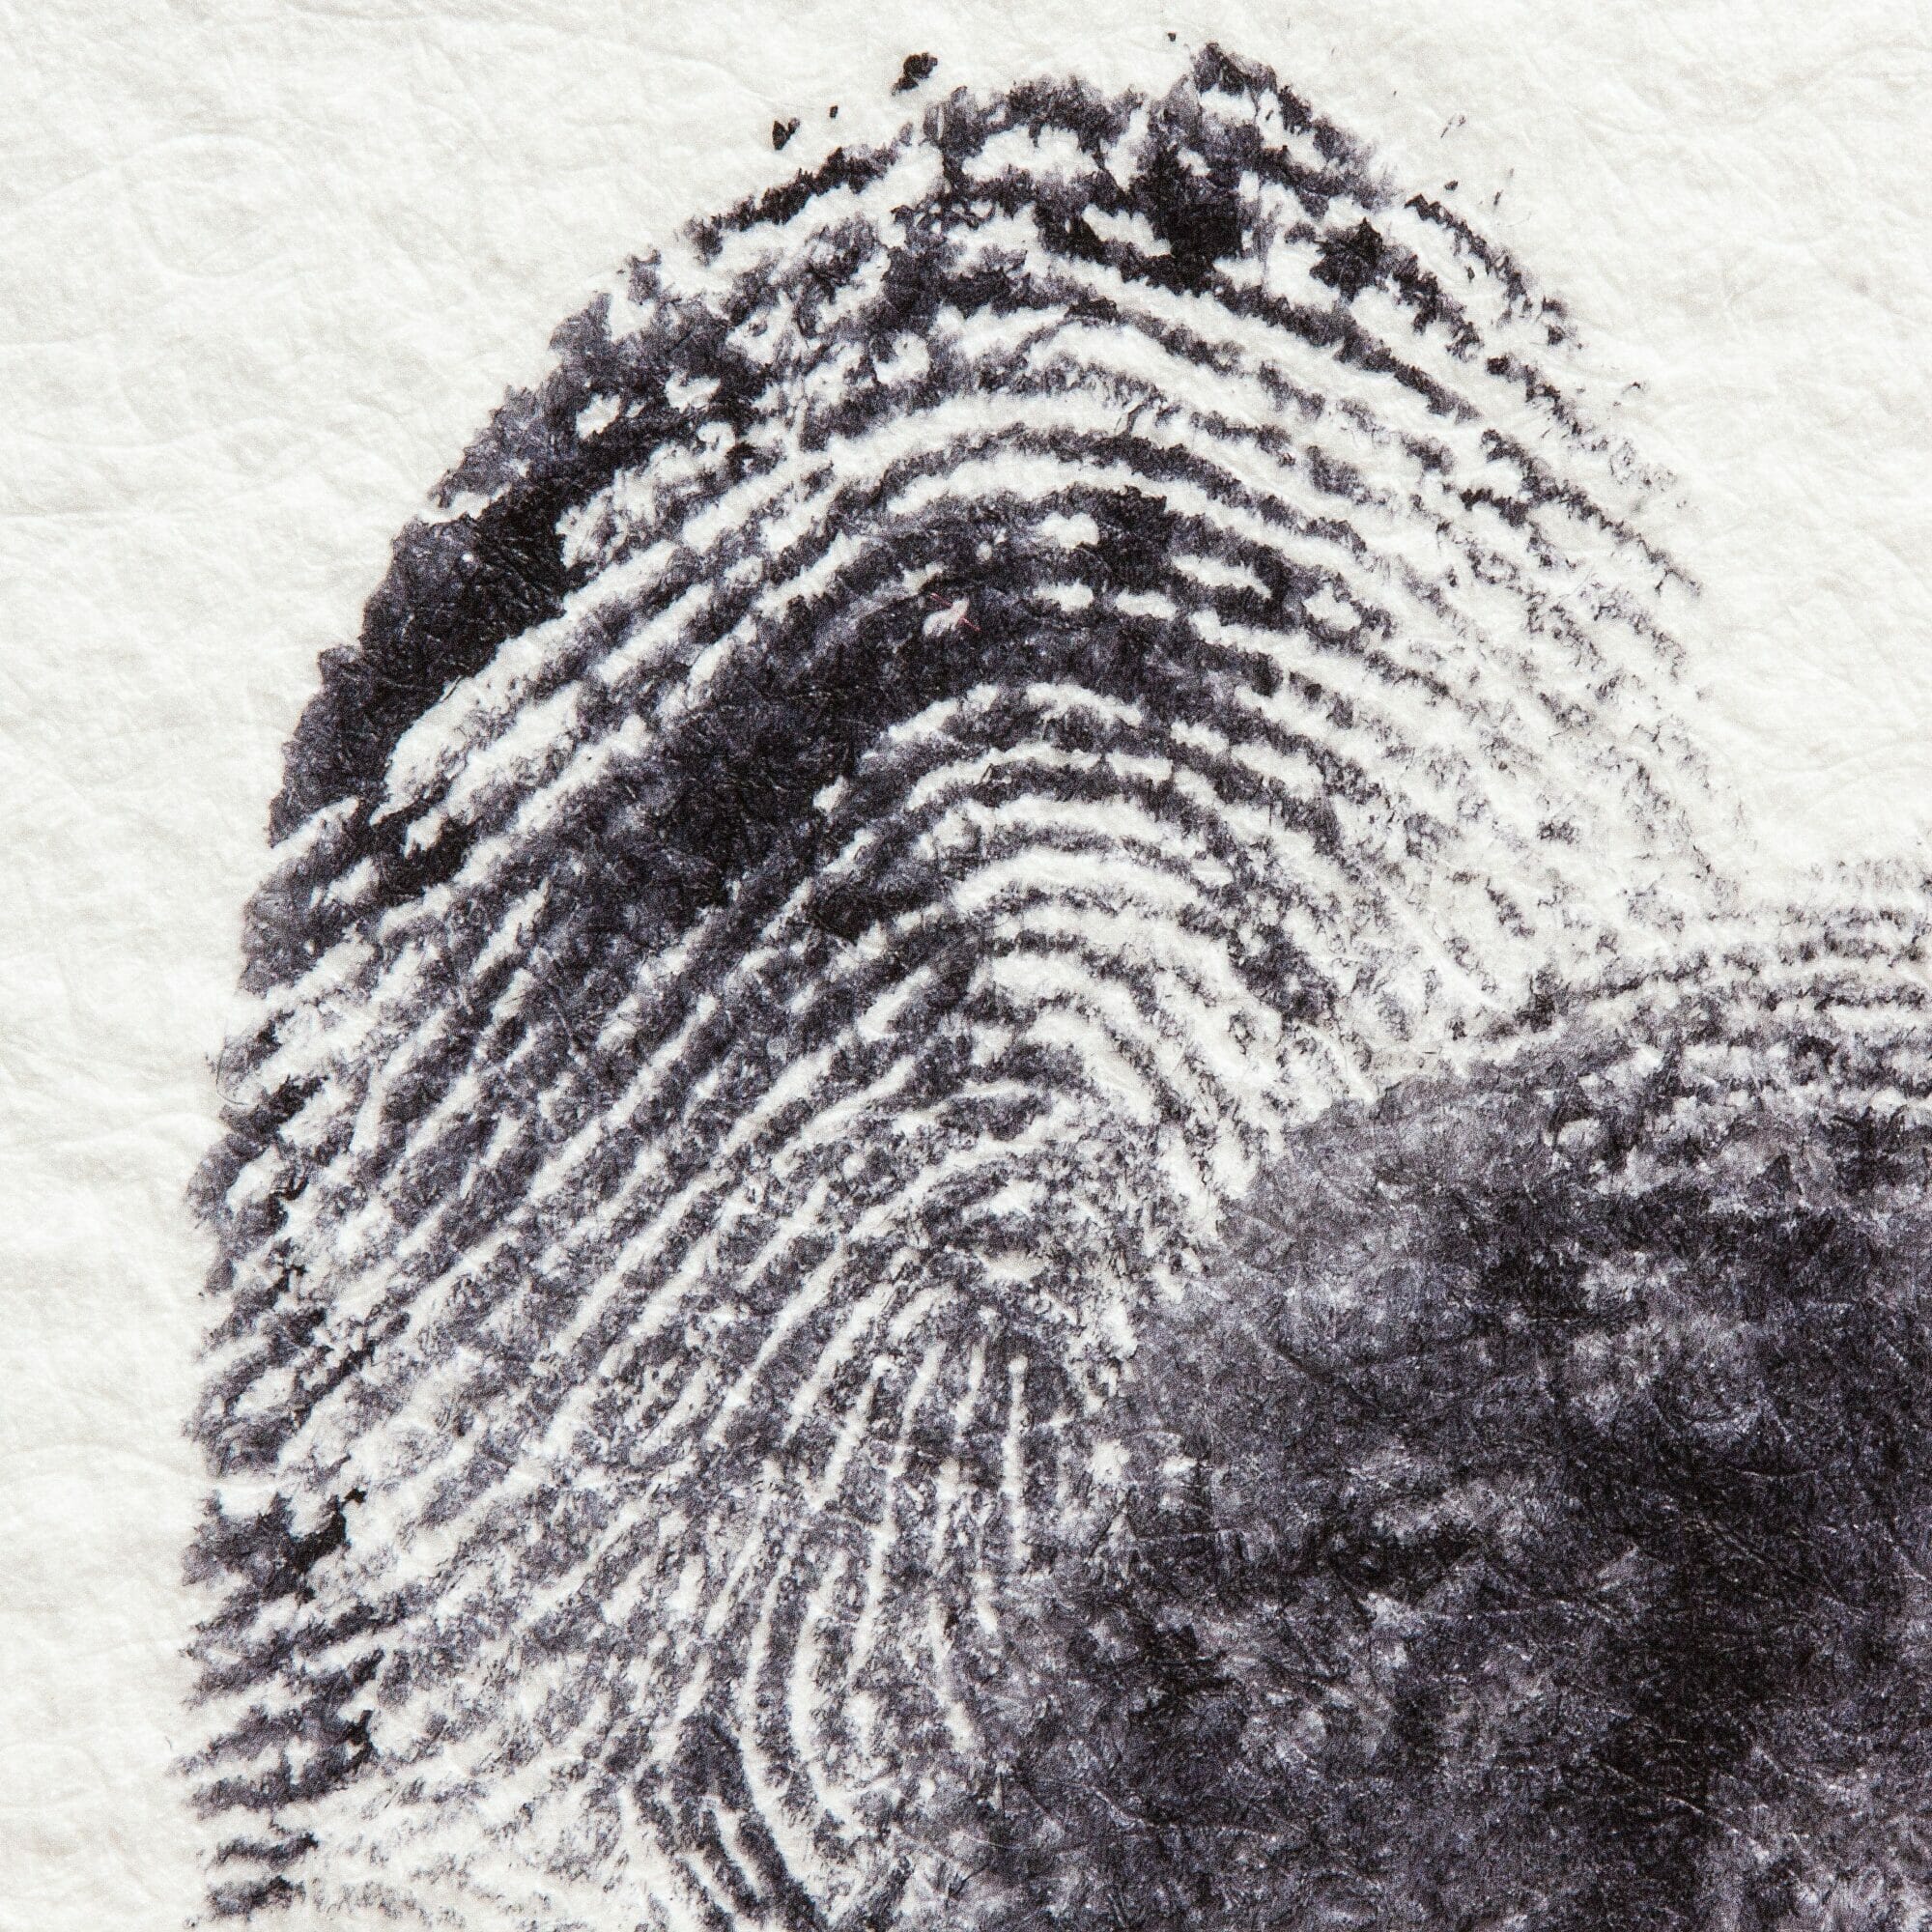 Urteil: Polizei darf Fingerabdrücke nehmen, um Smartphone zu entsperren – auch mit Zwang